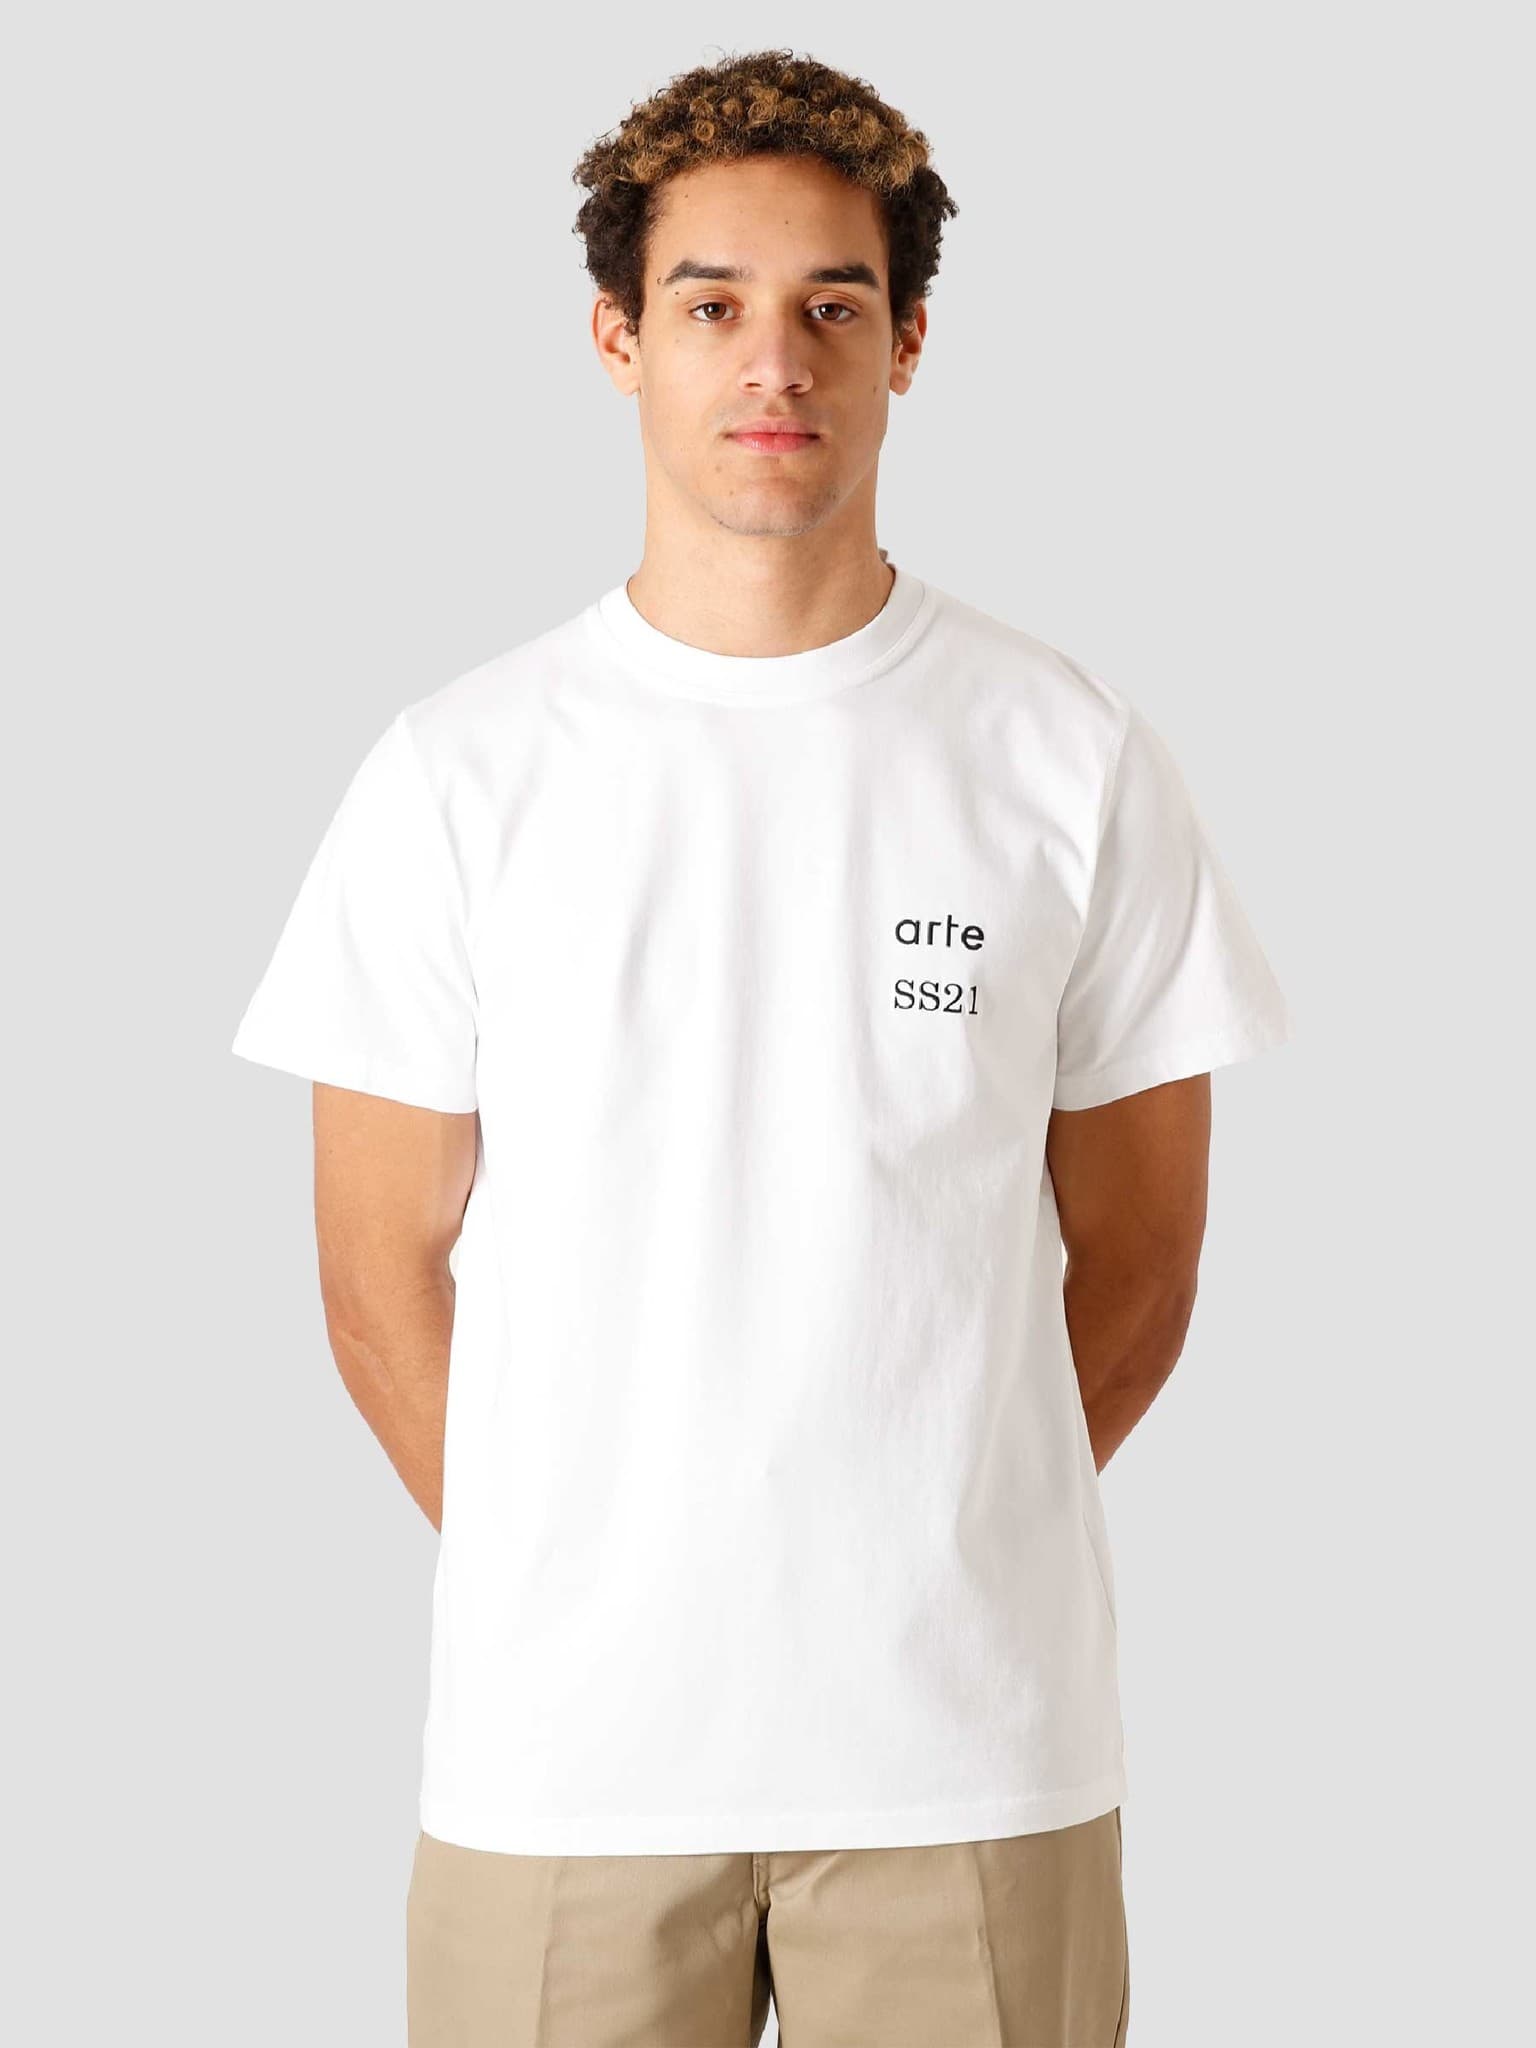 Tommy Back Arte T-shirt - Navy – Arte Antwerp